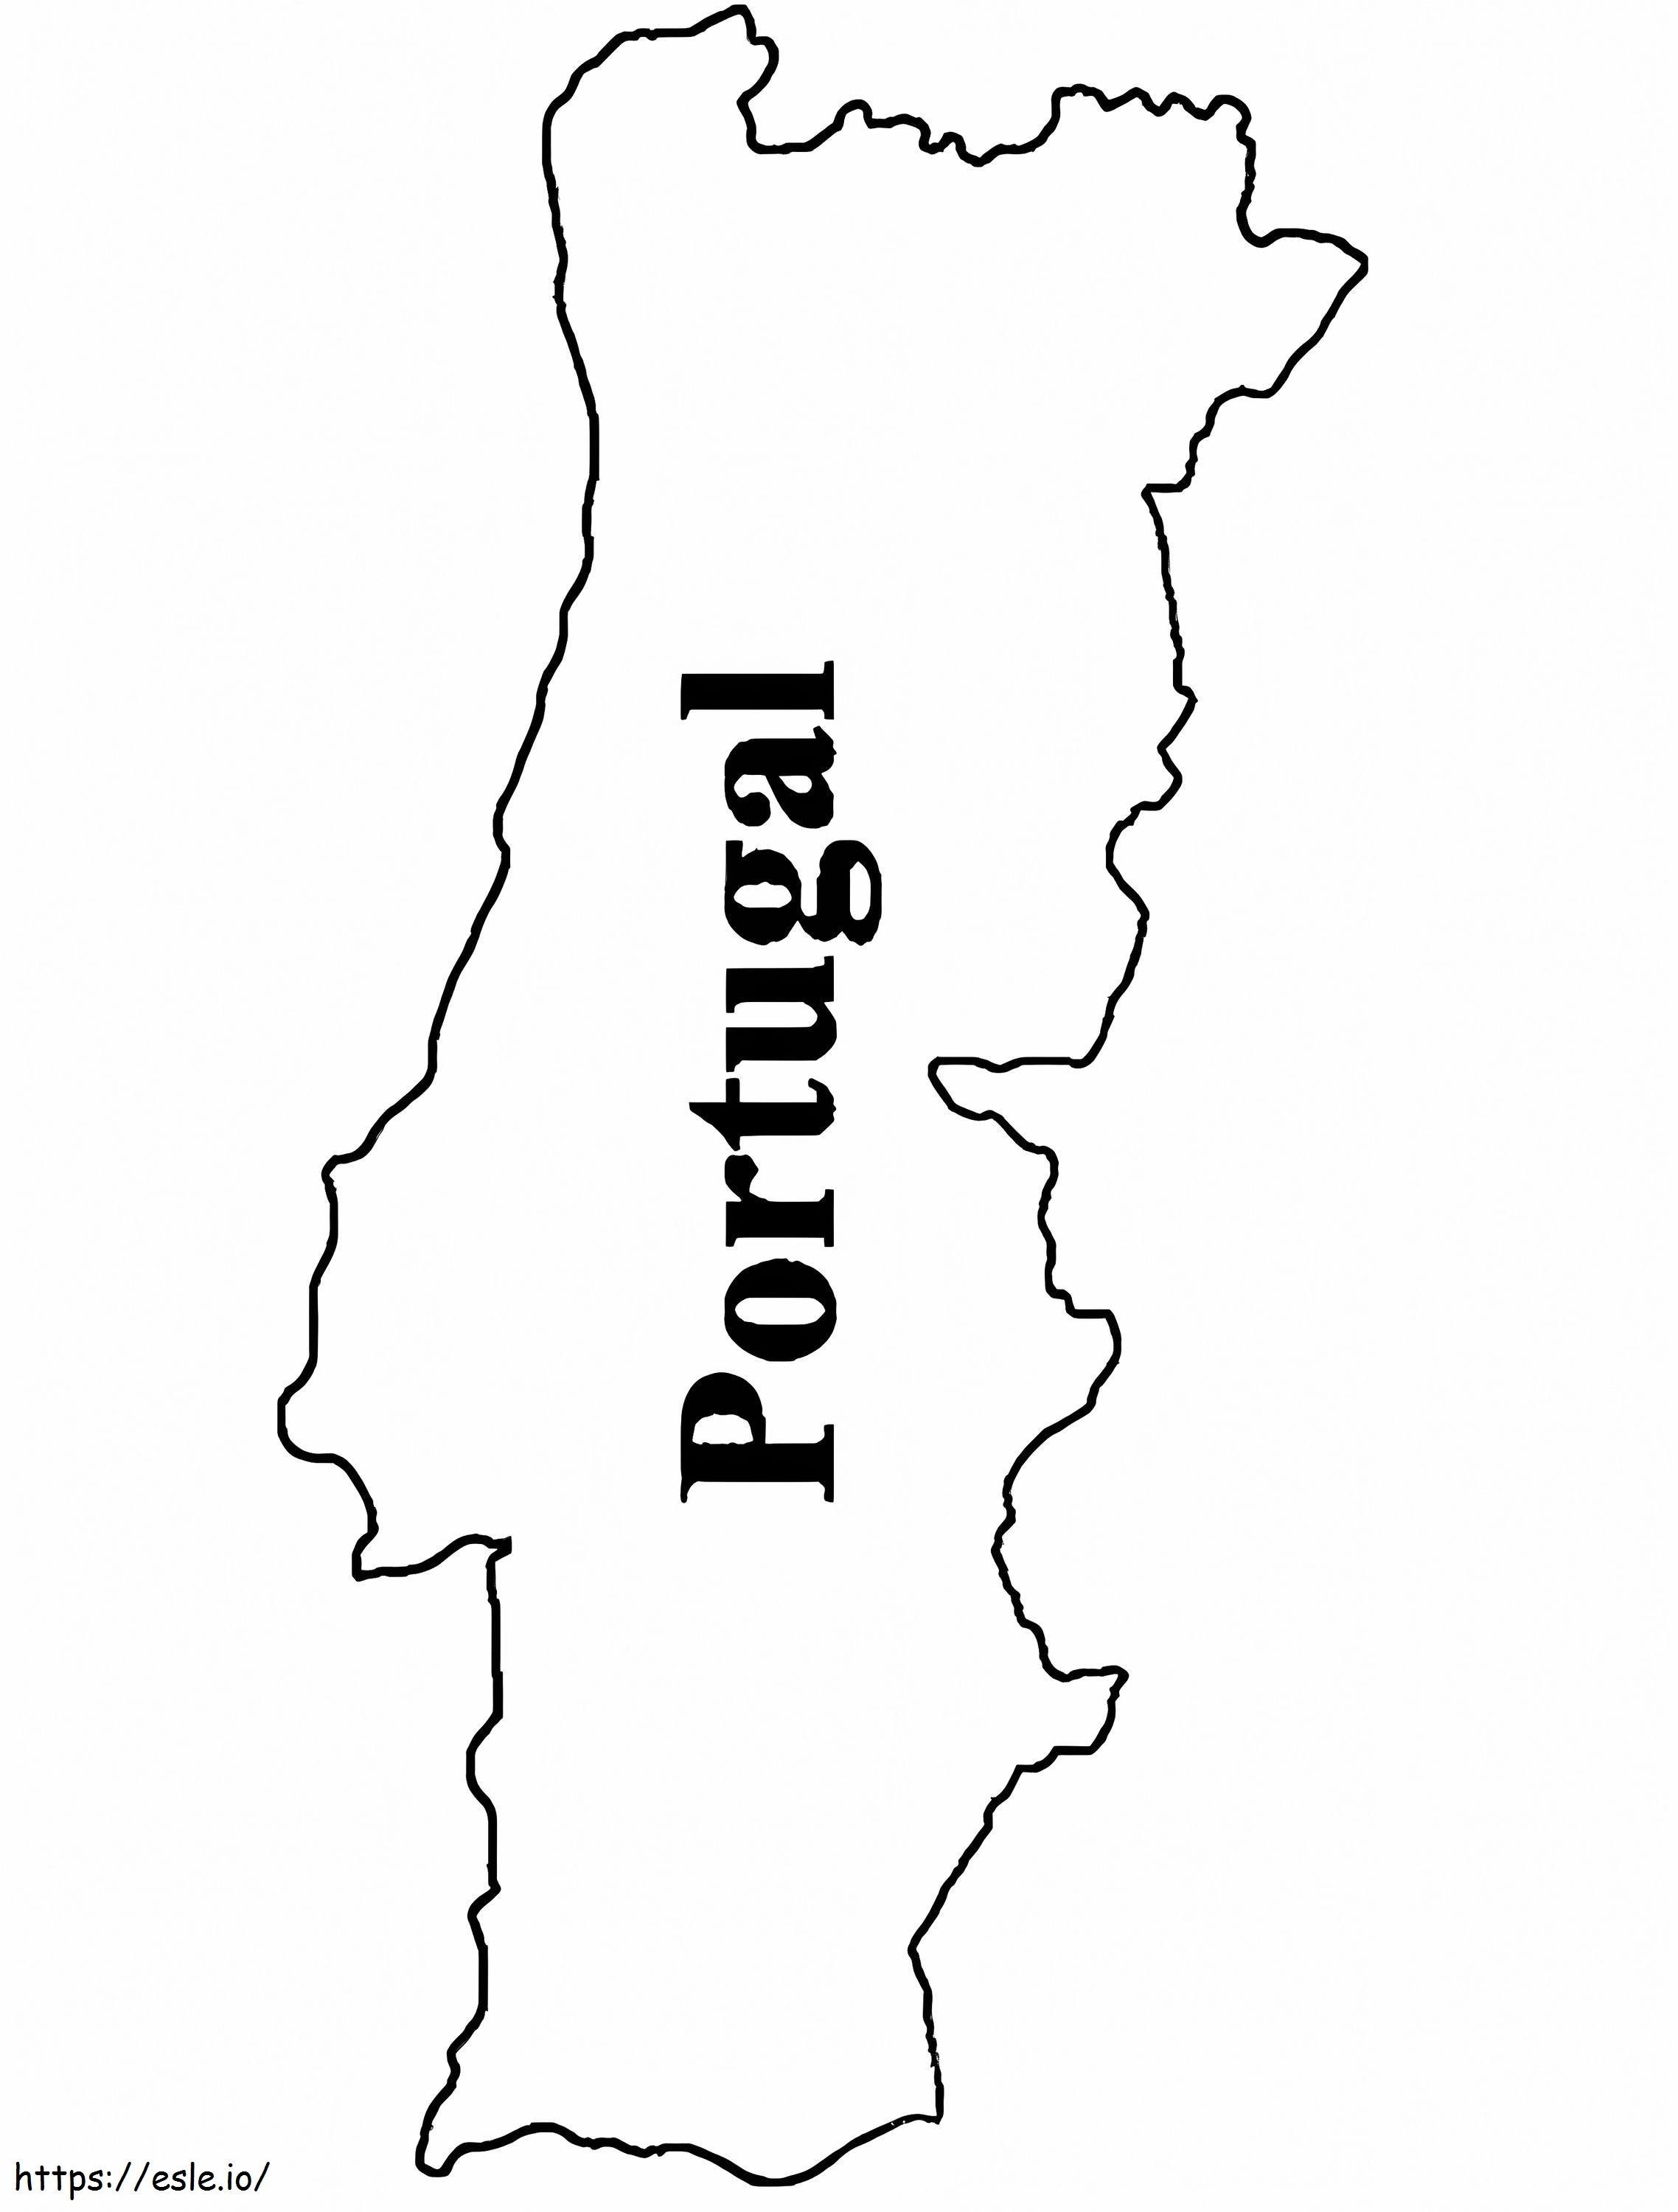 Mapa de Portugal para colorear